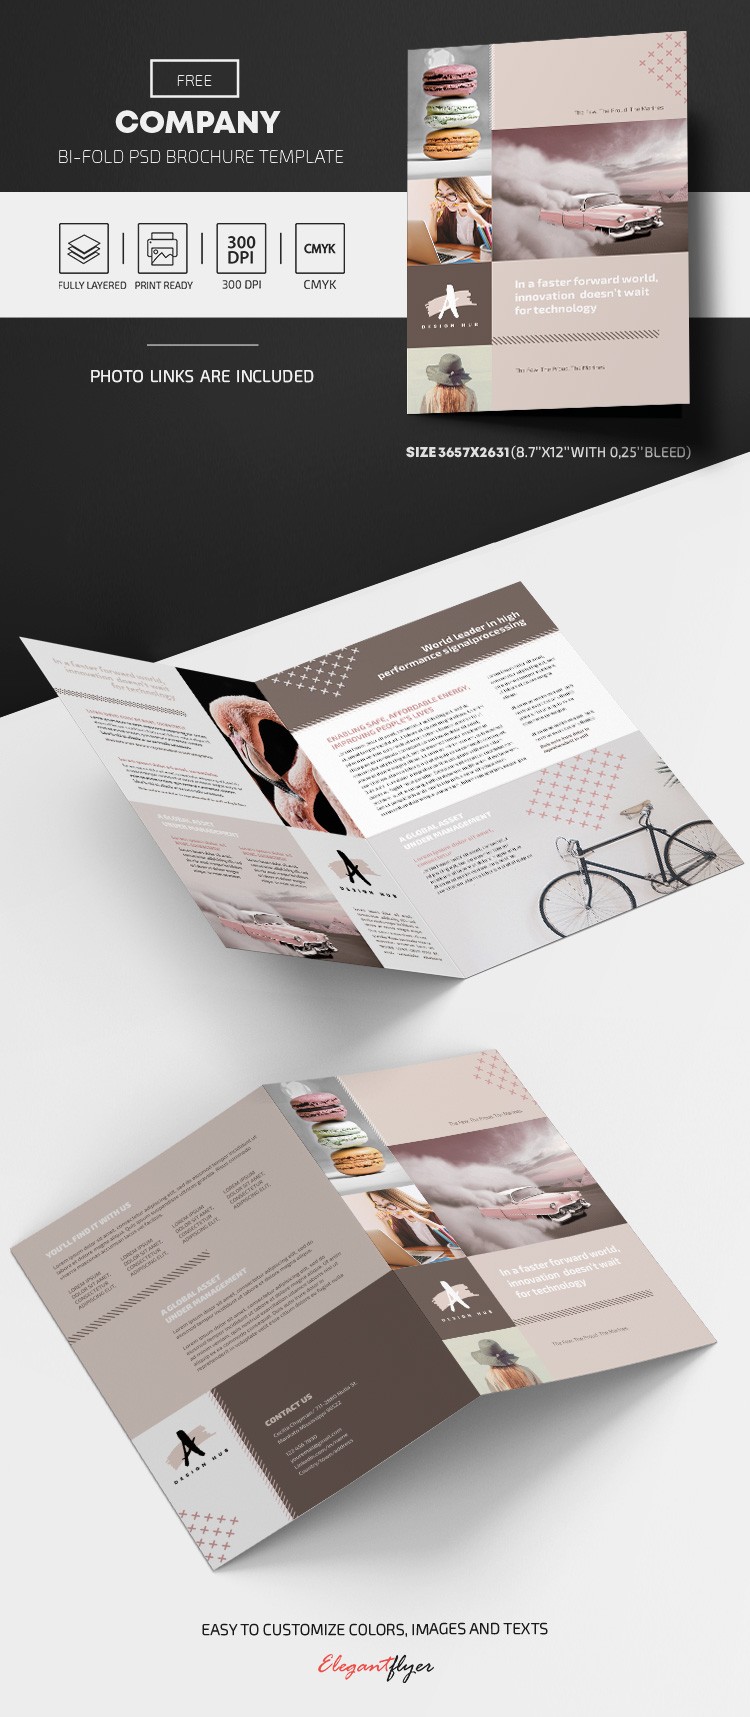 Brochure d'entreprise gratuite by ElegantFlyer